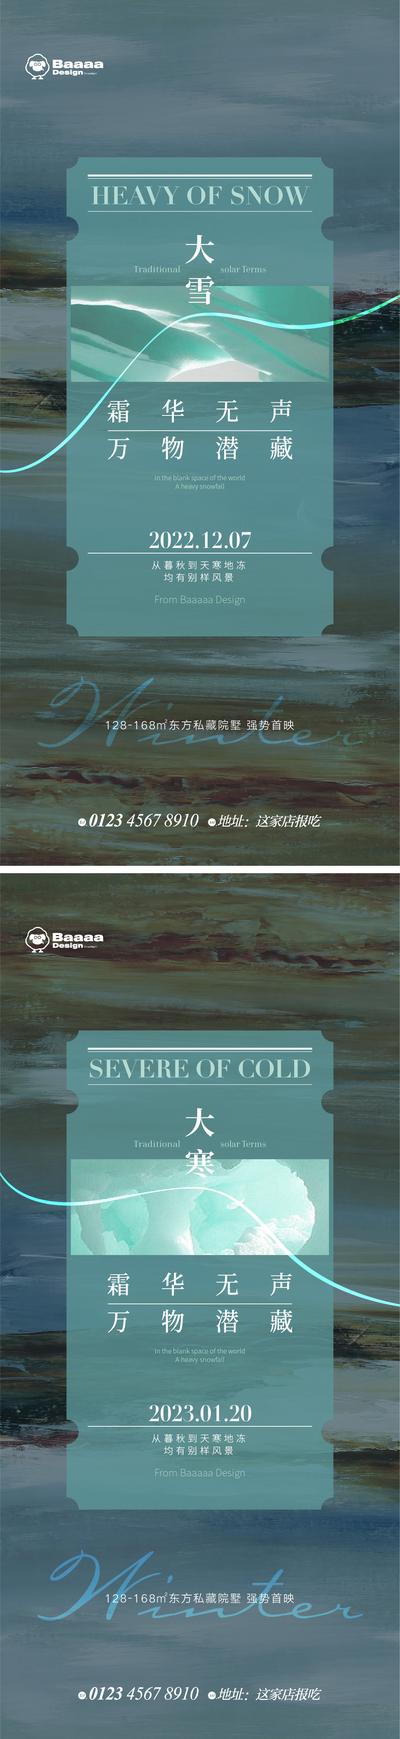 南门网 广告 海报 节气 大雪 大寒 冬天 油画 花园 版式 简约 排版 刷屏 铺排 传统节日